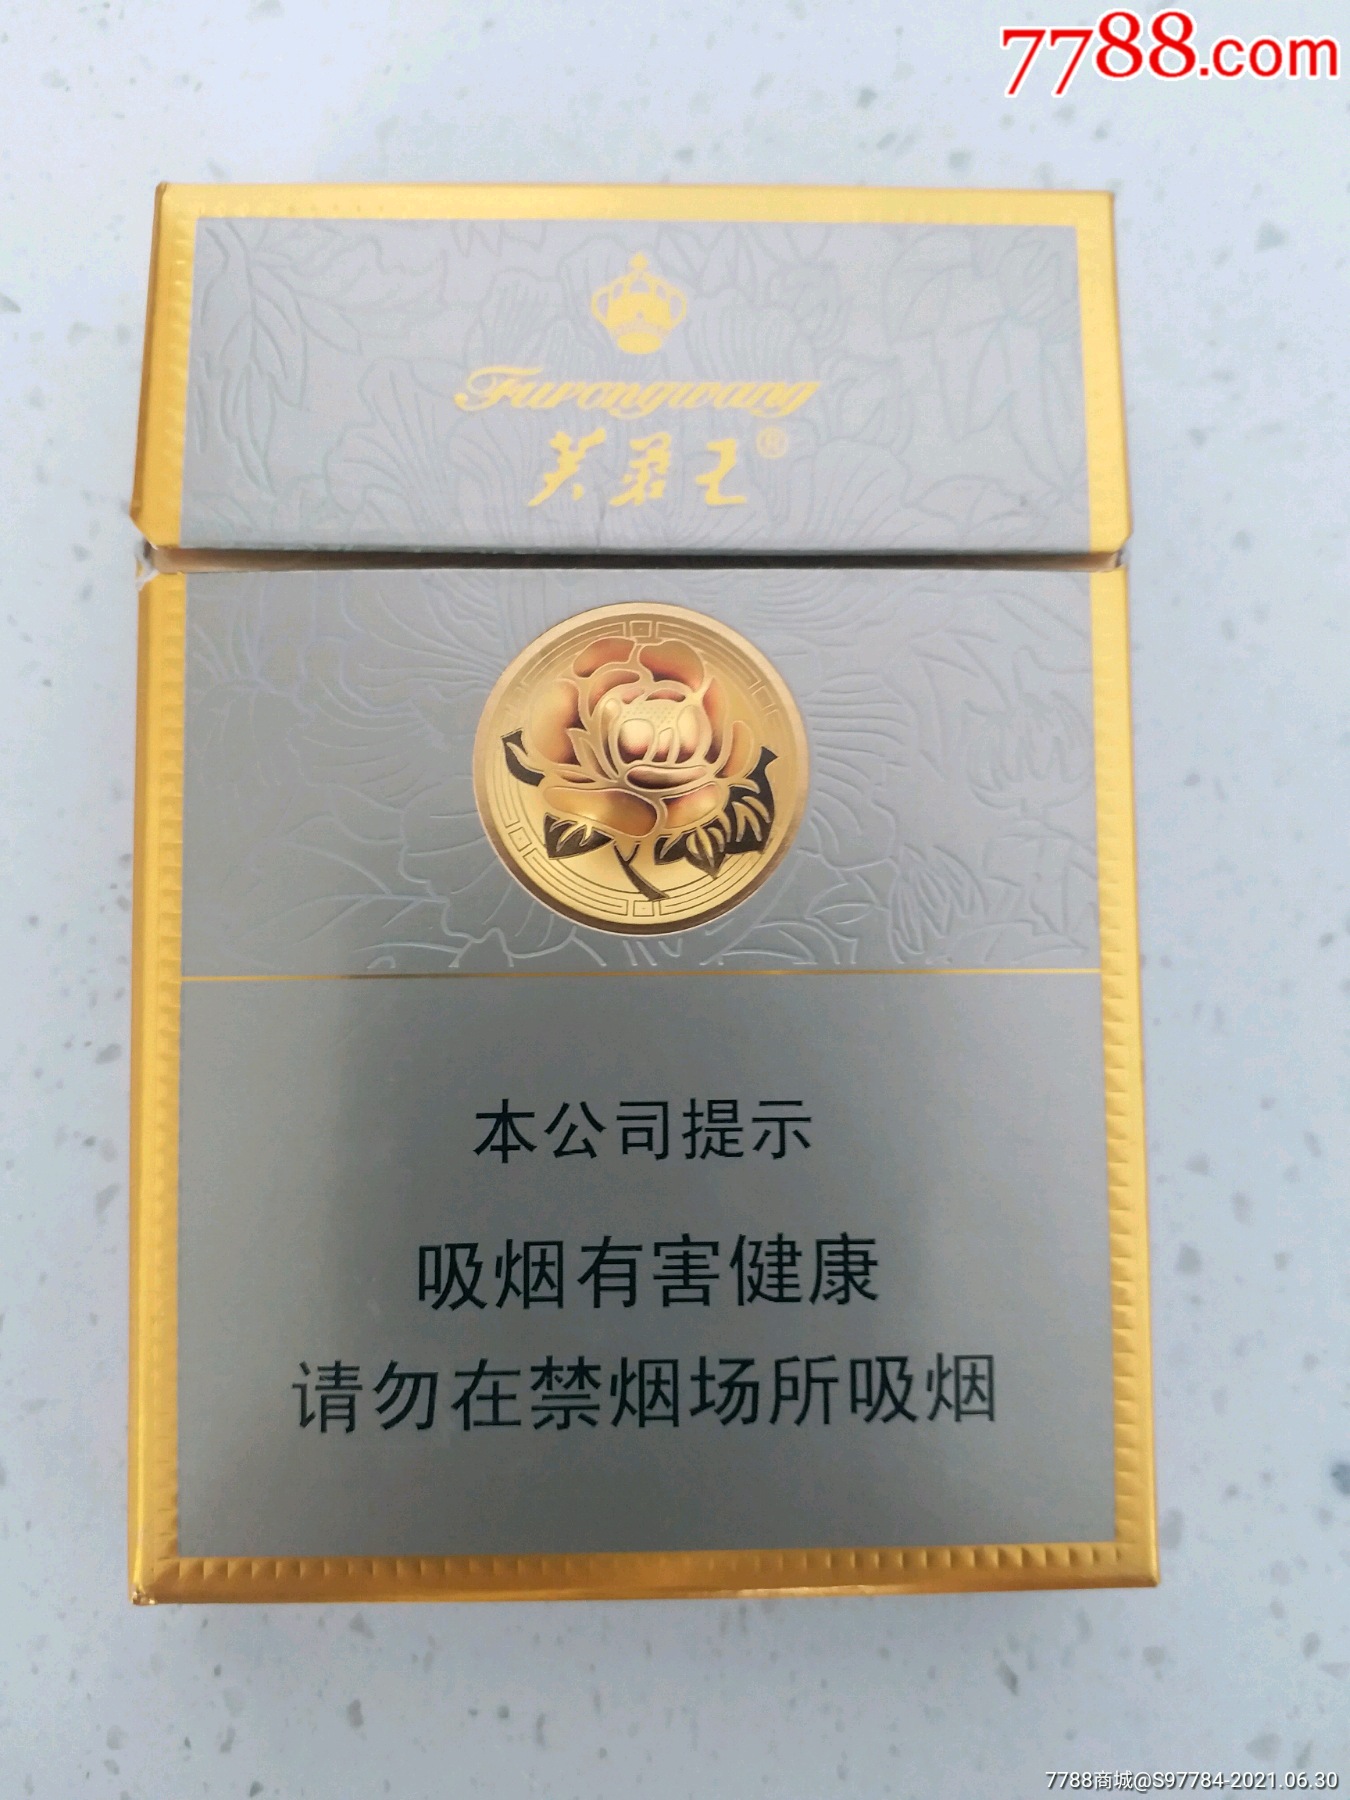 芙蓉王宽版中支-烟标/烟盒-7788利是封收藏